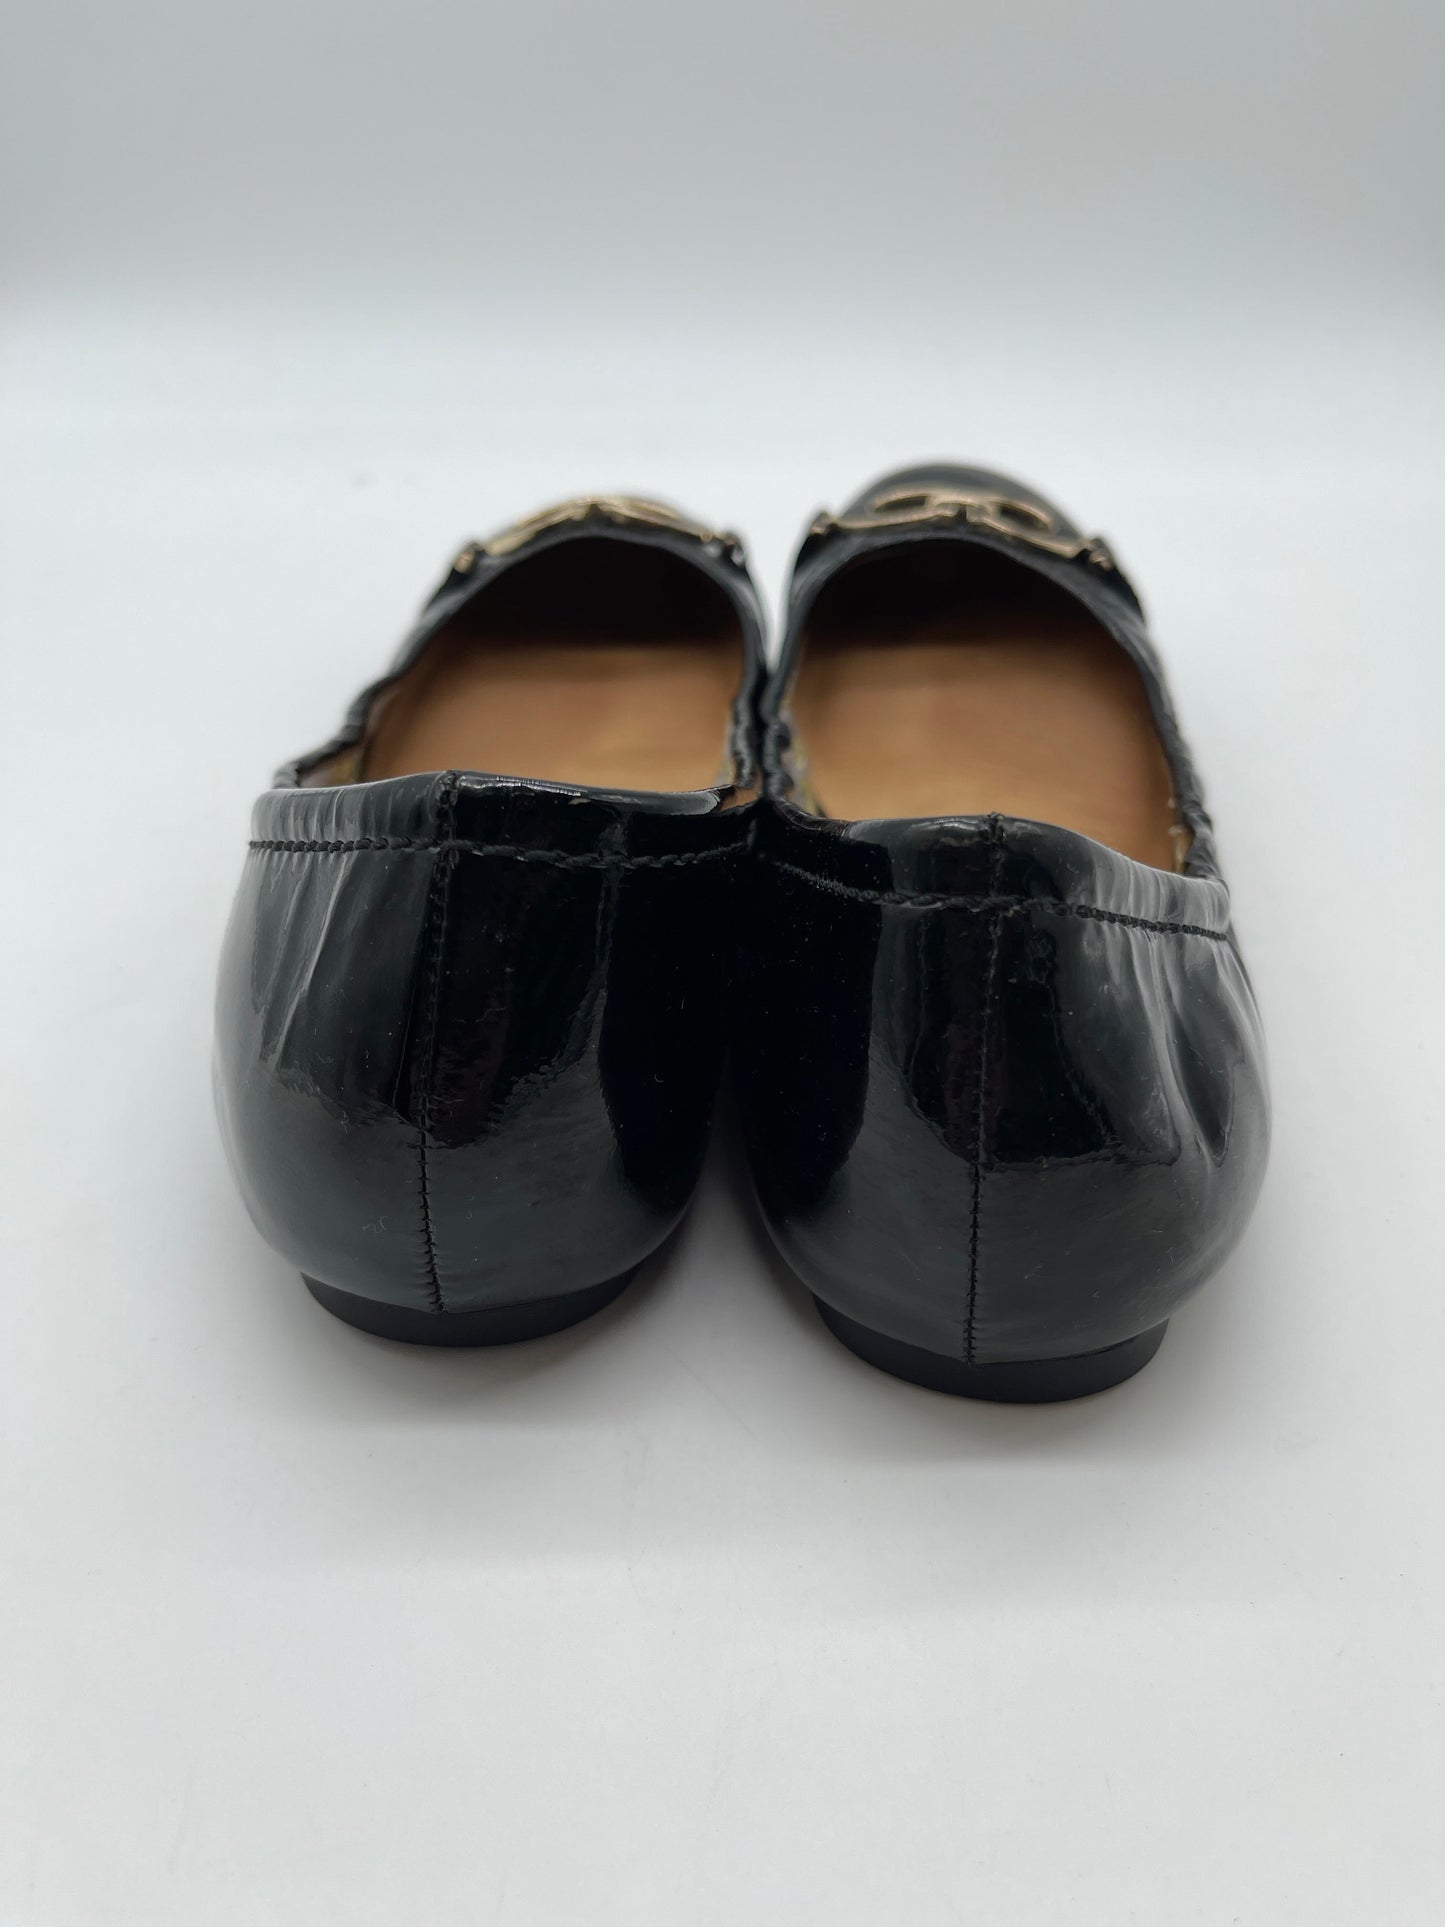 Black Shoes Flats Coach, Size 7.5